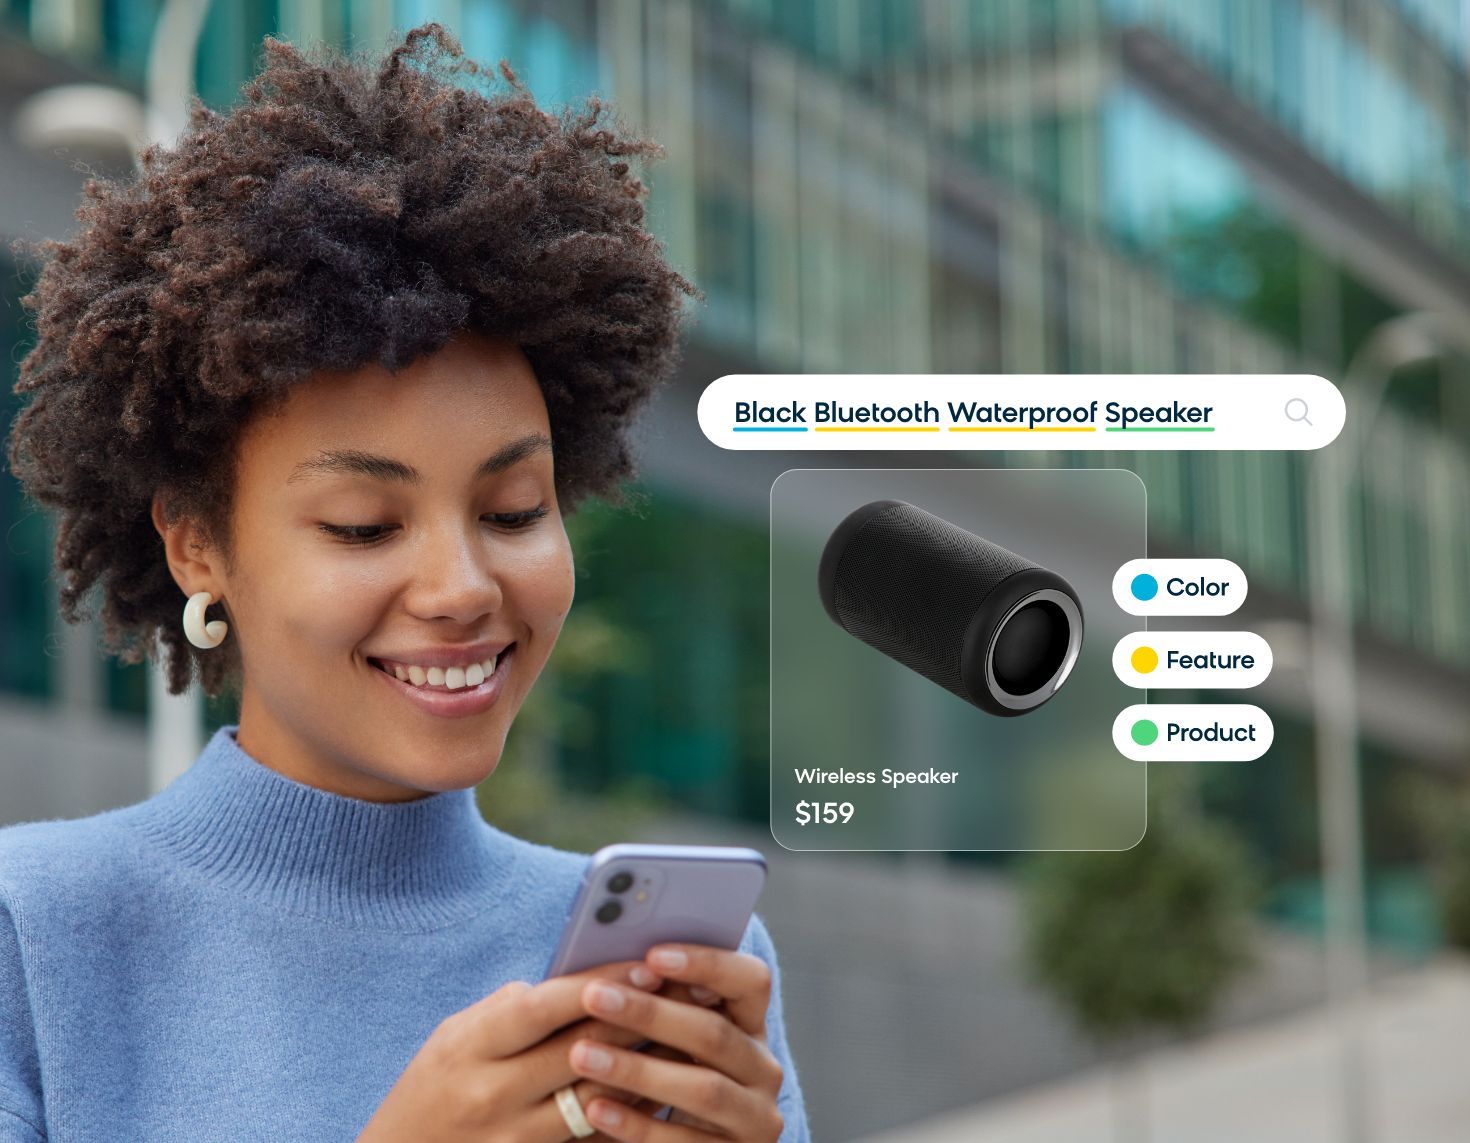 Customer Searching for Black Waterproof Bluetooth Speaker